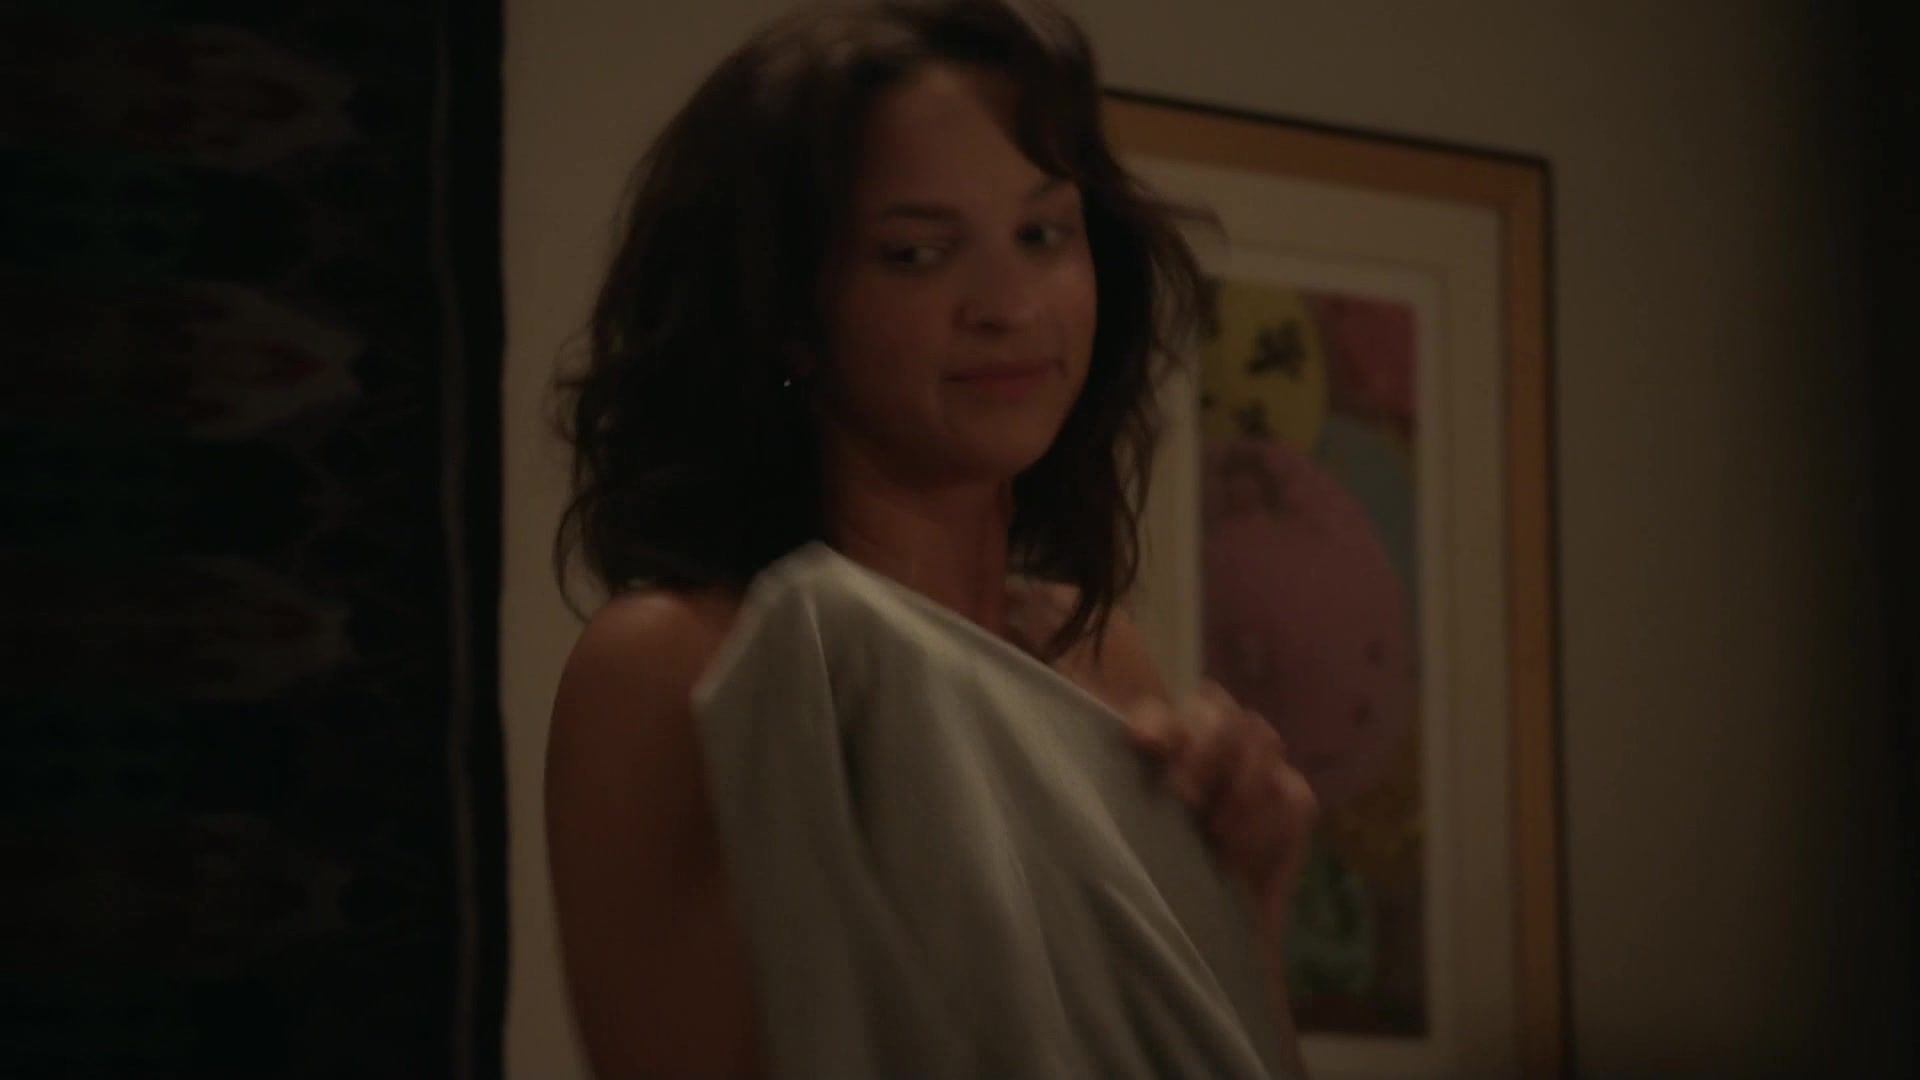 Blackcock TV show nude scene | Emmy Rossum, Arden Myrin, Ruby Modine - Shameless S07 E05 (2016) Flirt4free